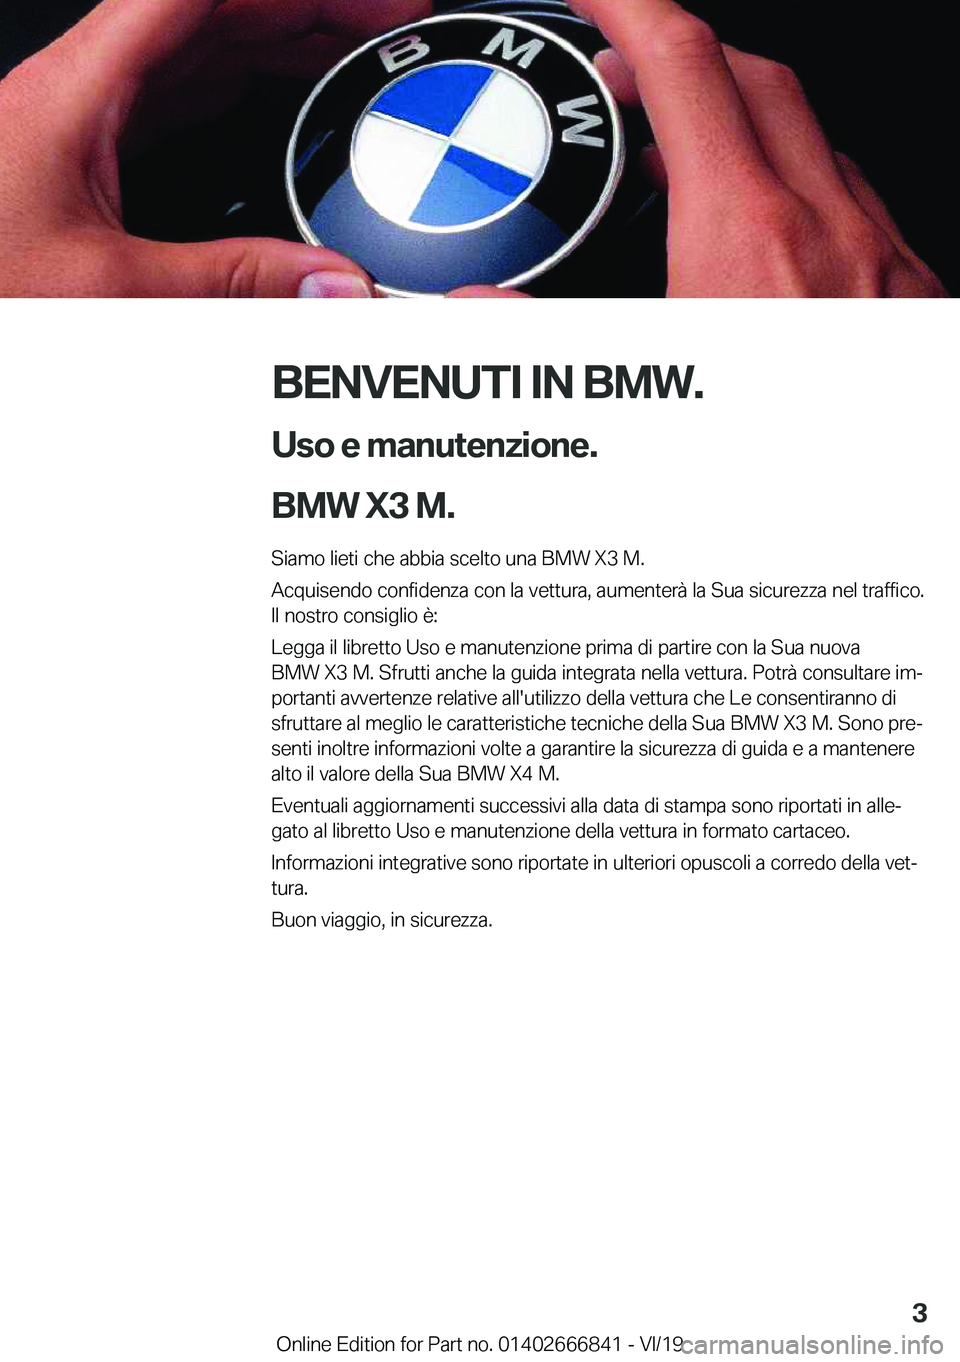 BMW X3 M 2020  Libretti Di Uso E manutenzione (in Italian) �B�E�N�V�E�N�U�T�I��I�N��B�M�W�.�U�s�o��e��m�a�n�u�t�e�n�z�i�o�n�e�.
�B�M�W��X�3��M�.
�S�i�a�m�o��l�i�e�t�i��c�h�e��a�b�b�i�a��s�c�e�l�t�o��u�n�a��B�M�W��X�3��M�.
�A�c�q�u�i�s�e�n�d�o��